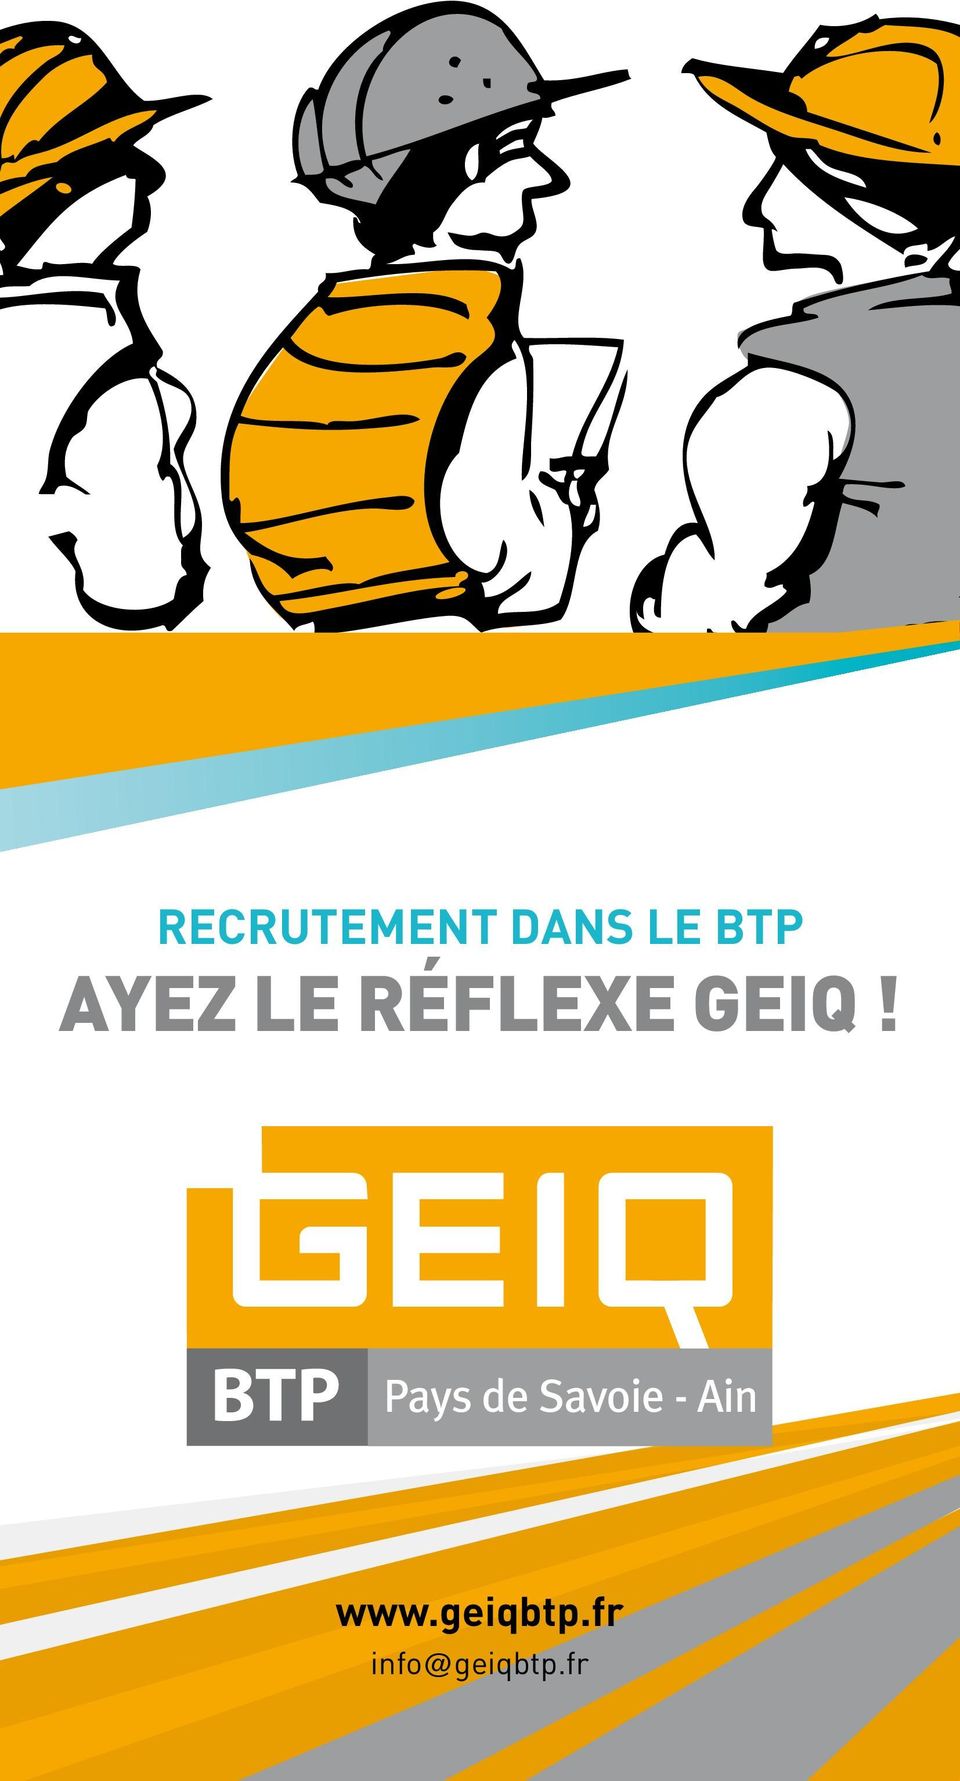 réflexe geiq! www.